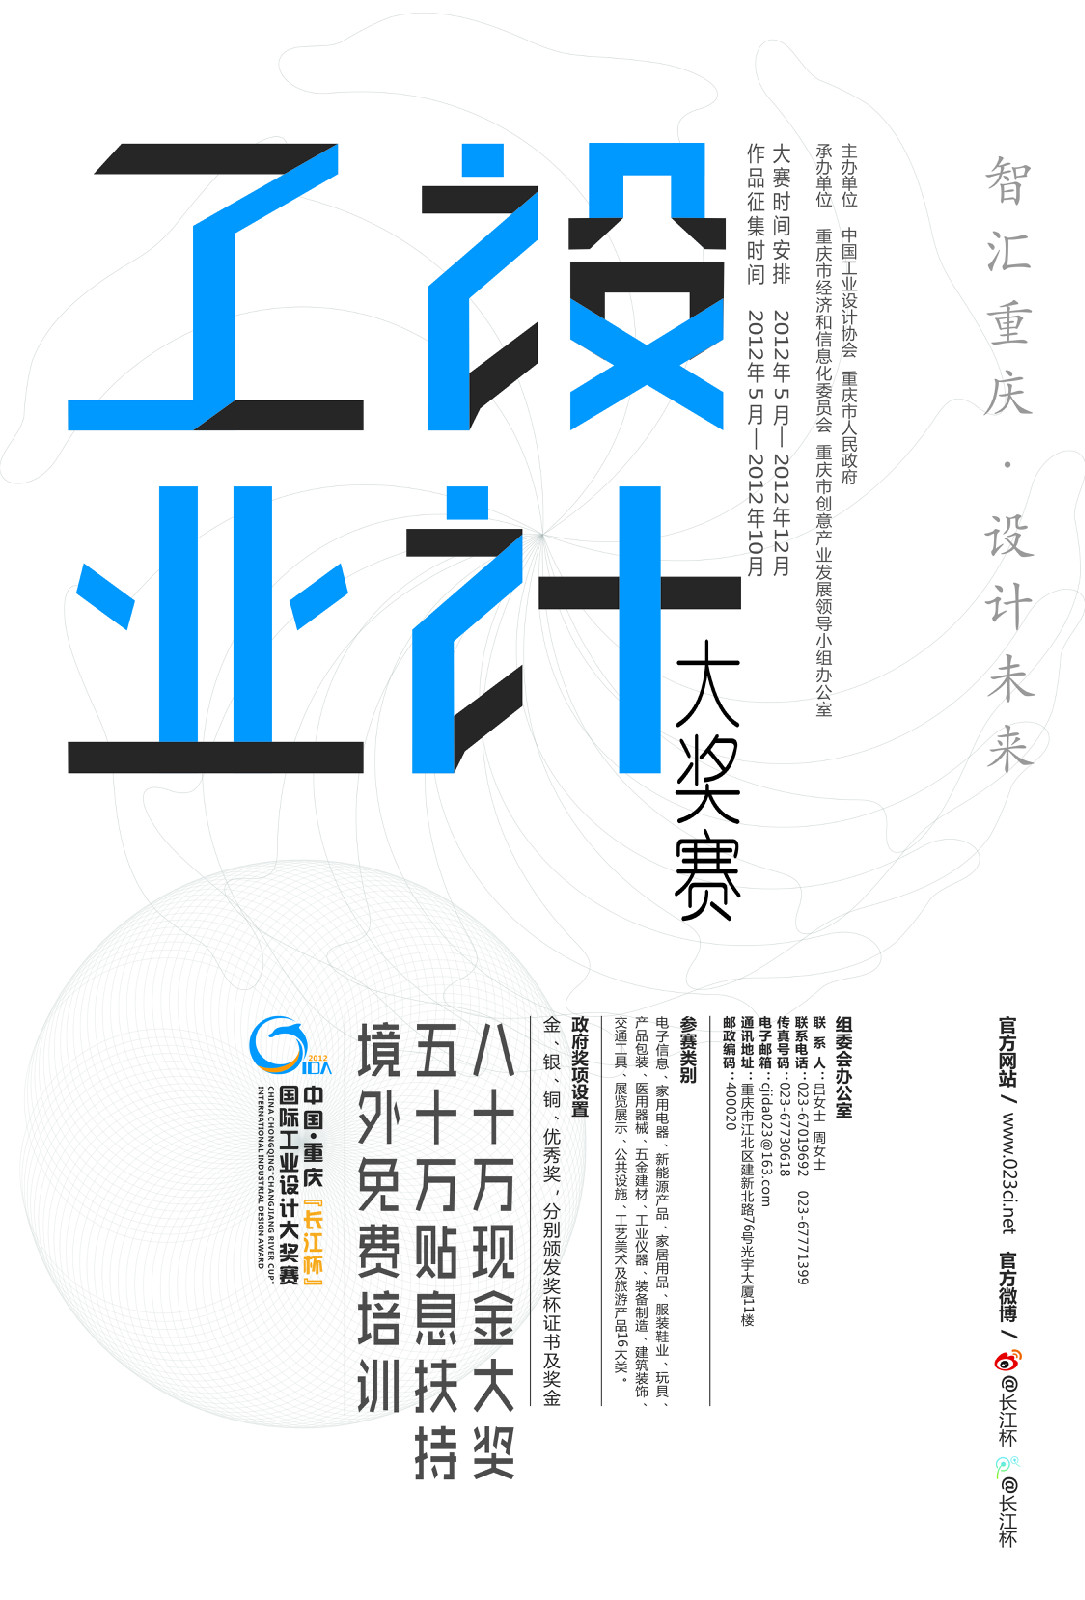 “長江杯”國際工業設計大獎賽